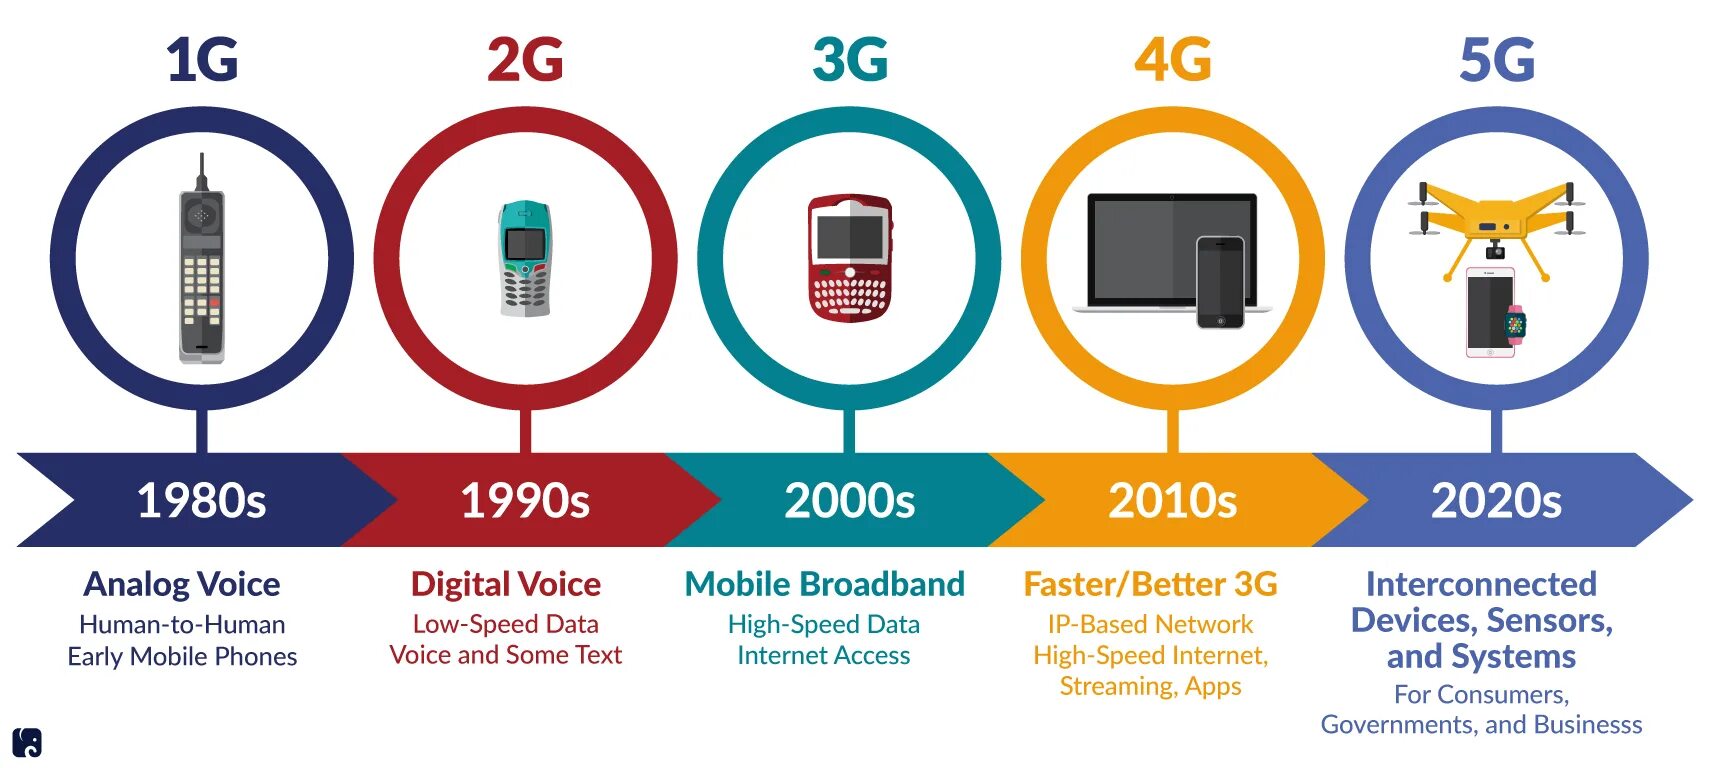 Чем отличается 4g от 5g. Поколения сотовой связи 2g 3g и 4g. Технологии сотовой связи 2g 3g 4g. 4g стандарты сотовой сети. Сотовая связь 1g 2g 3g 4g 5g.